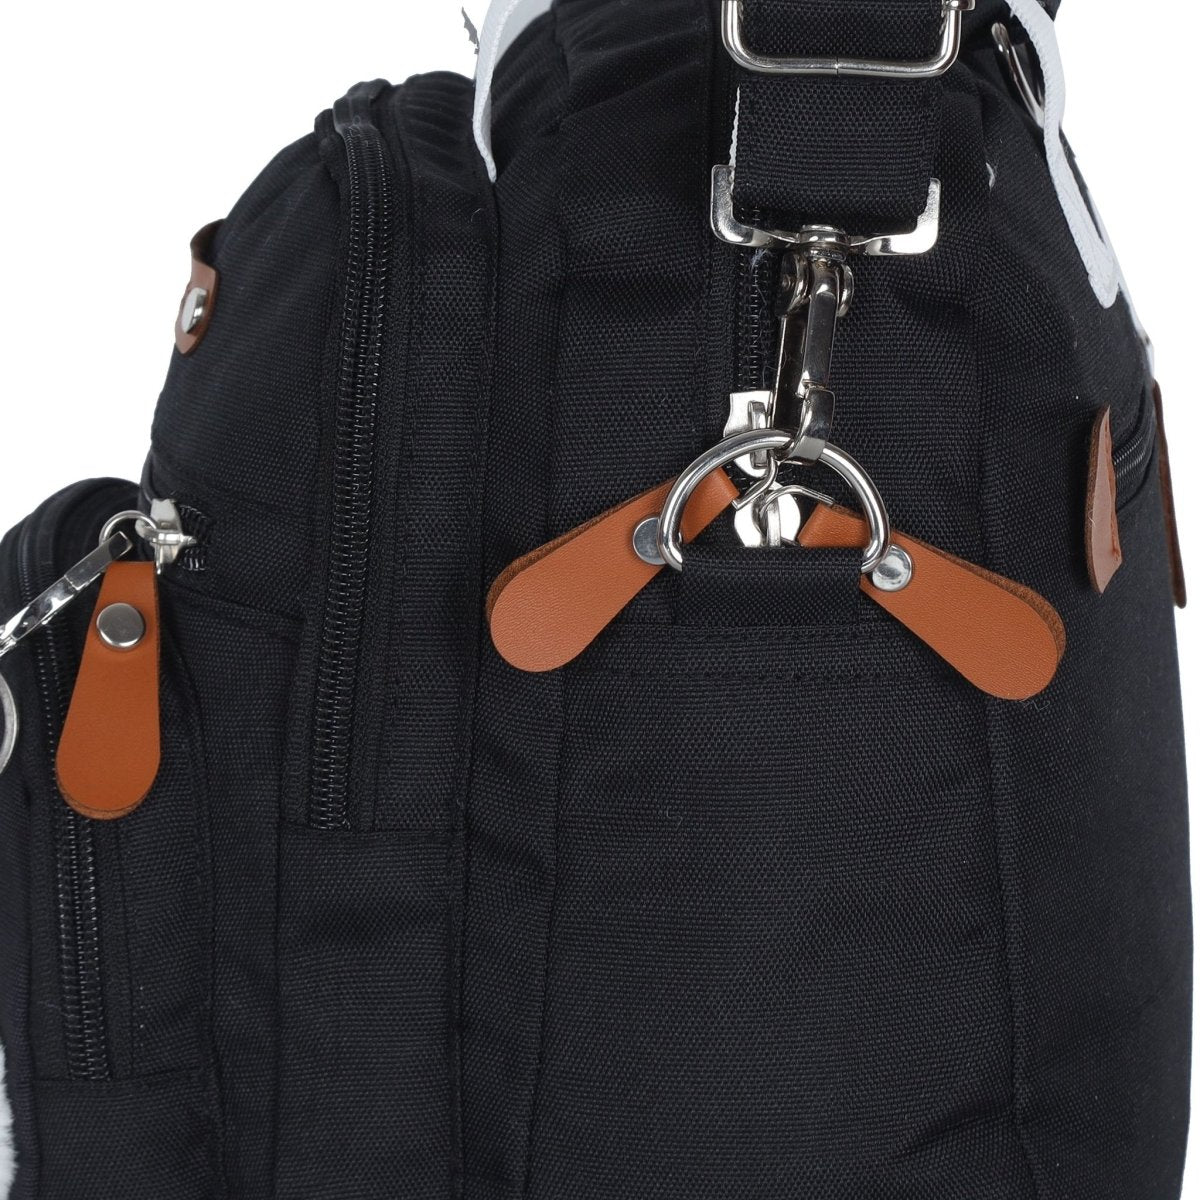 Mini Diaper Bag for Casual Outings- Muma Bear - DPG-MMBR